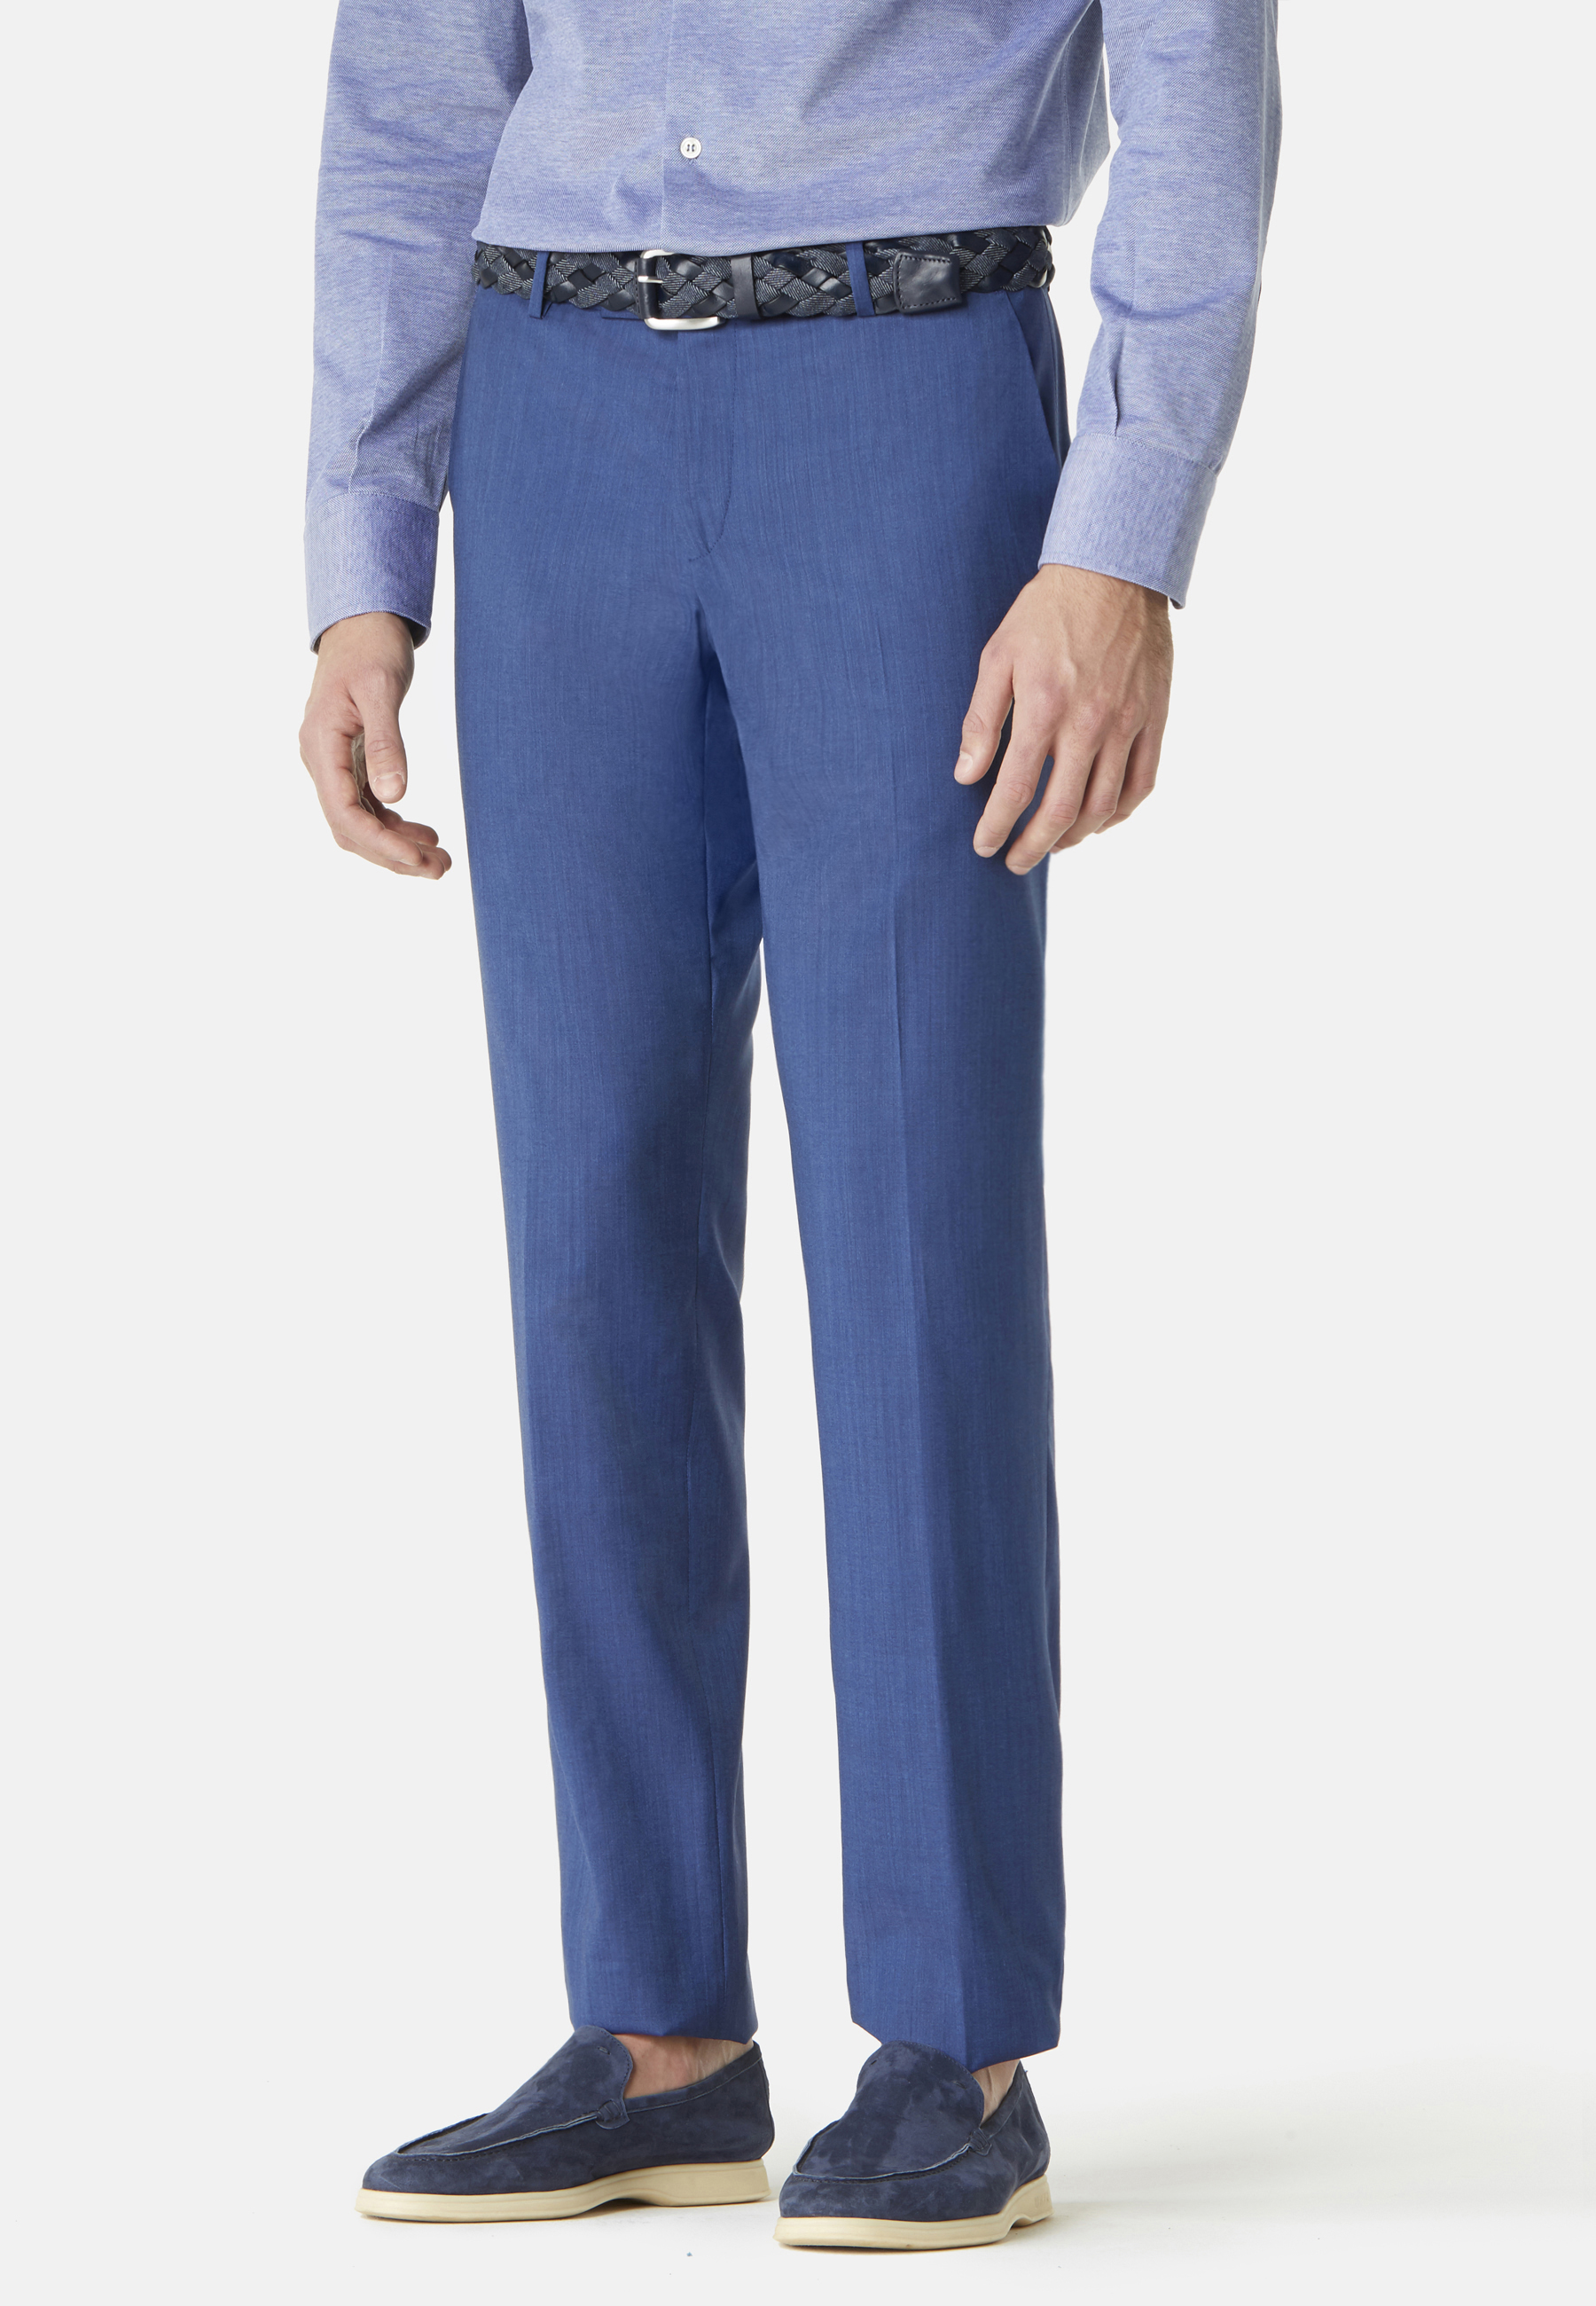 Royal Blue Dress Suit Pant Men Classic Vintage Business Pants Suits Men  Royal Blue Red Slim Fit Pantalon Homme From Modleline, $27.9 | DHgate.Com